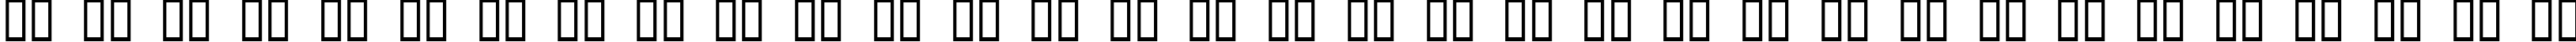 Пример написания русского алфавита шрифтом Helldorado